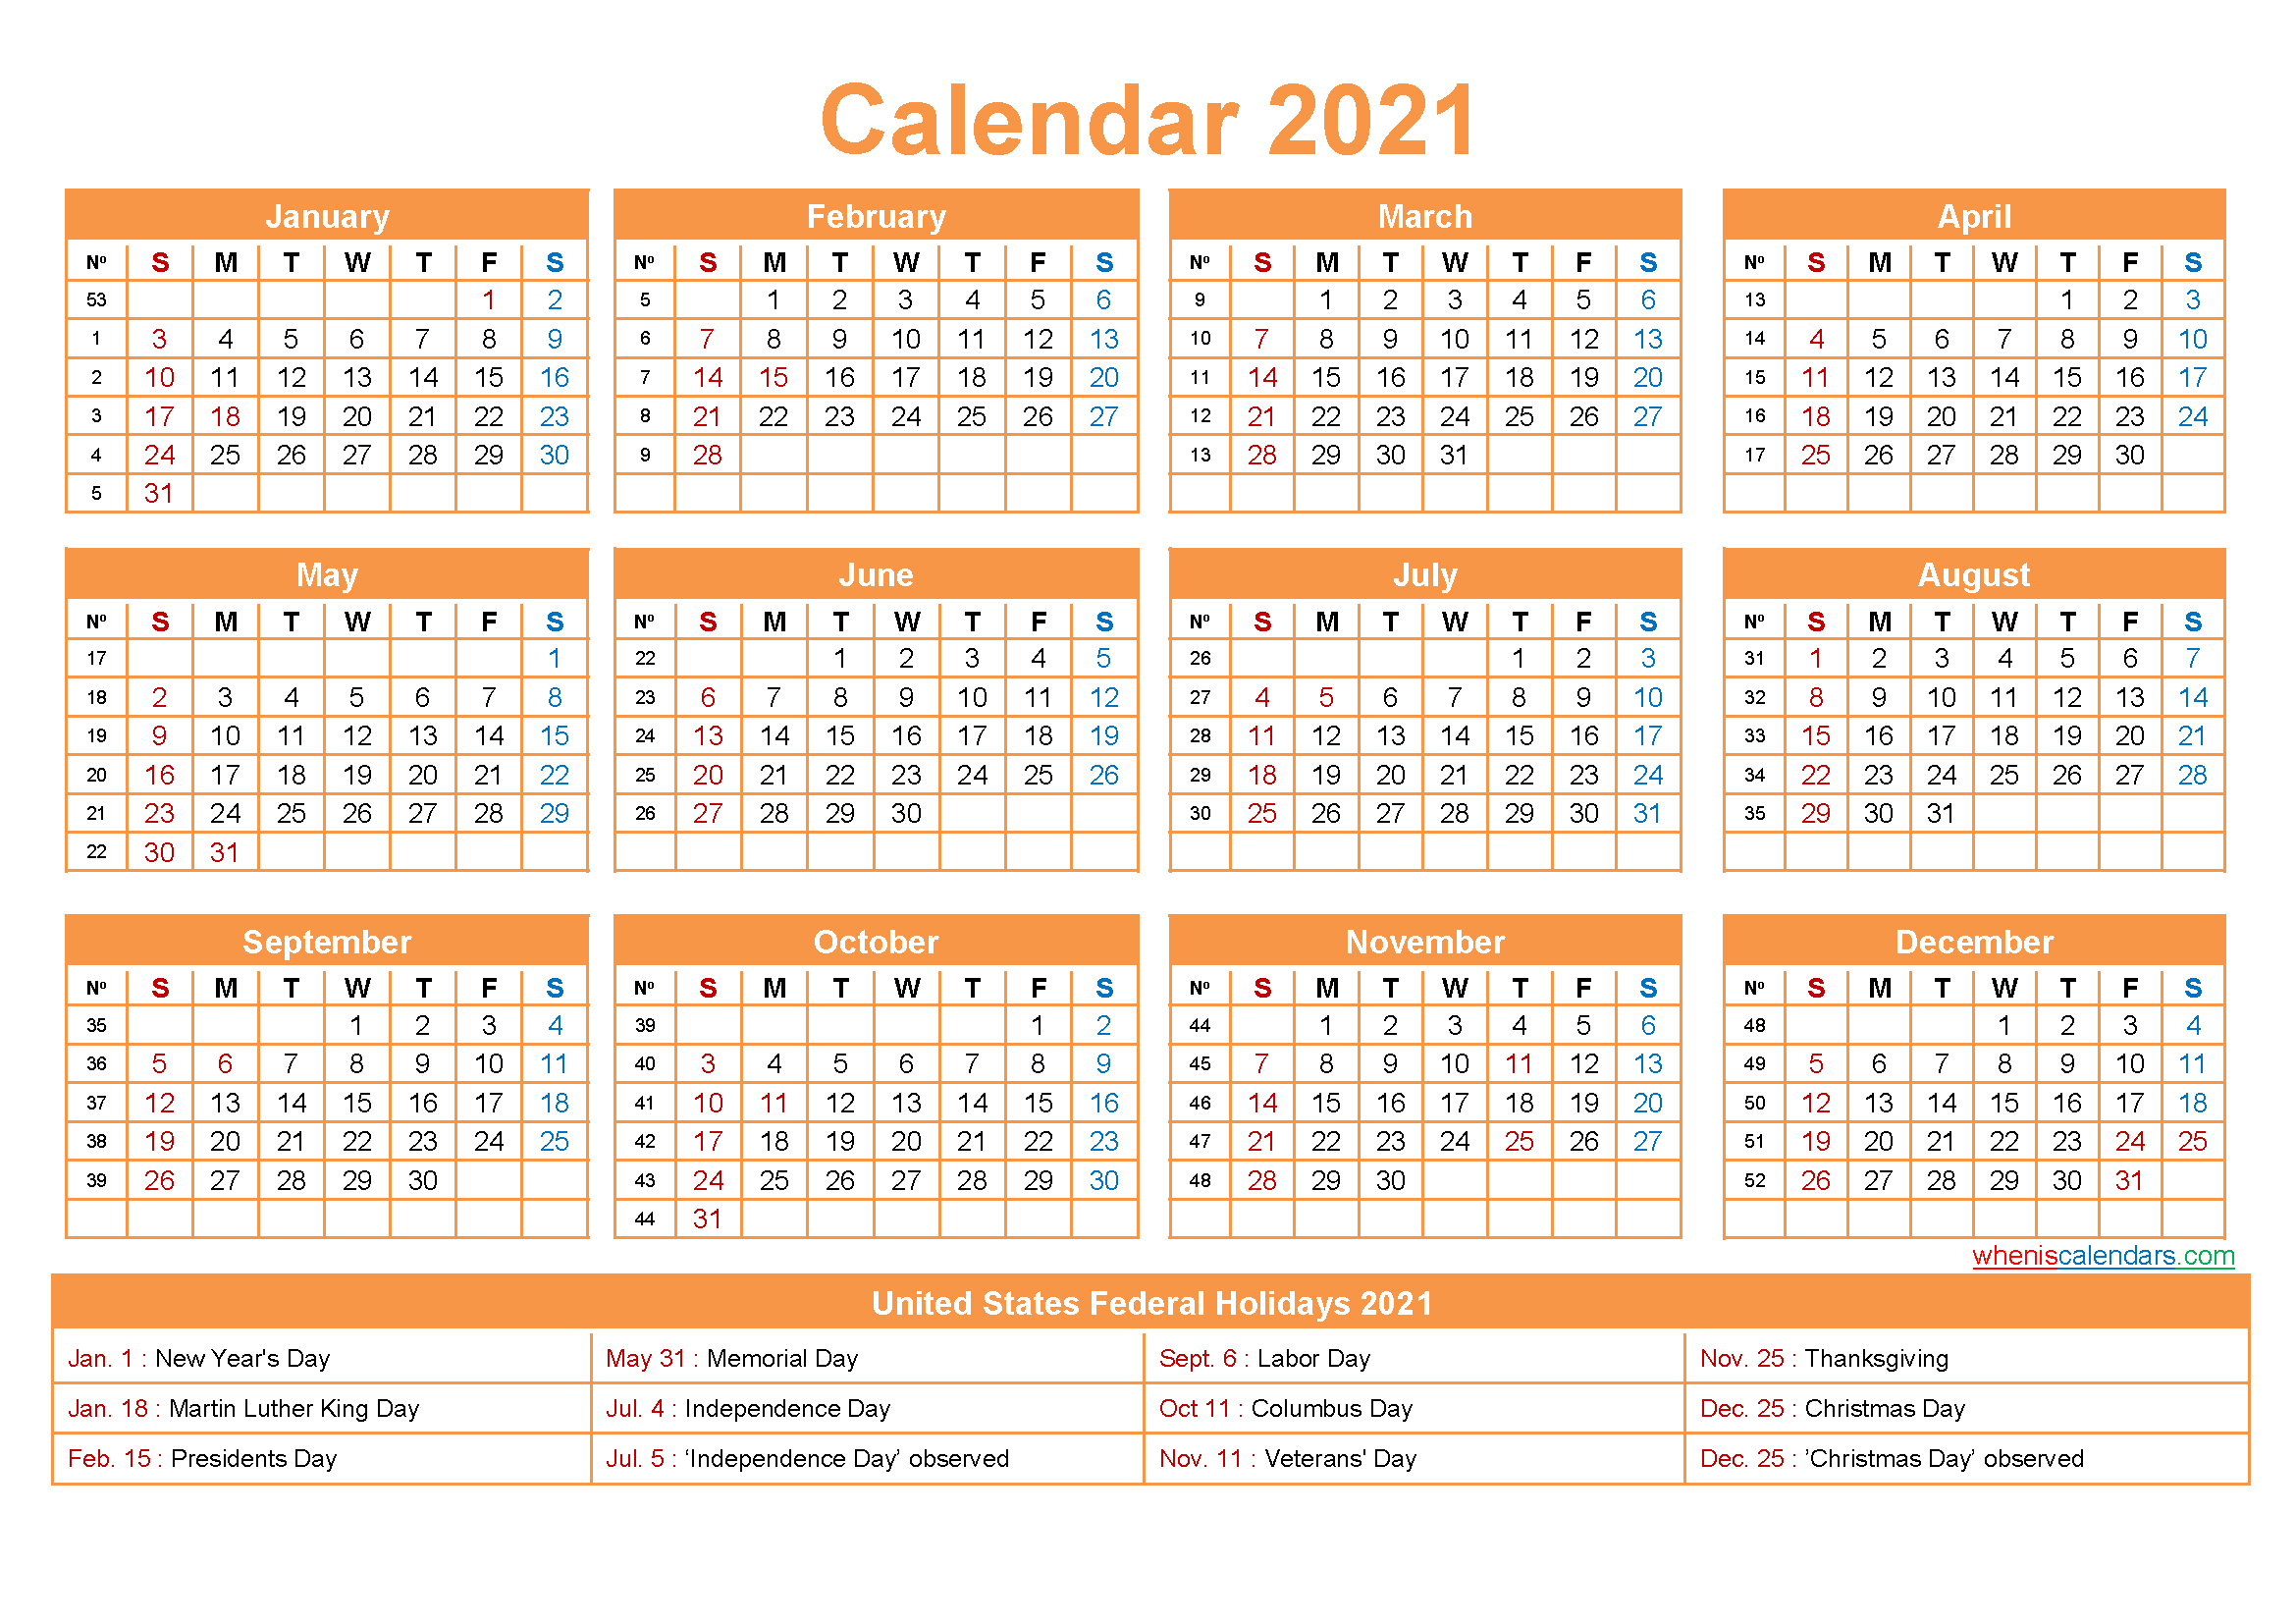 Производственный календарь 2022г